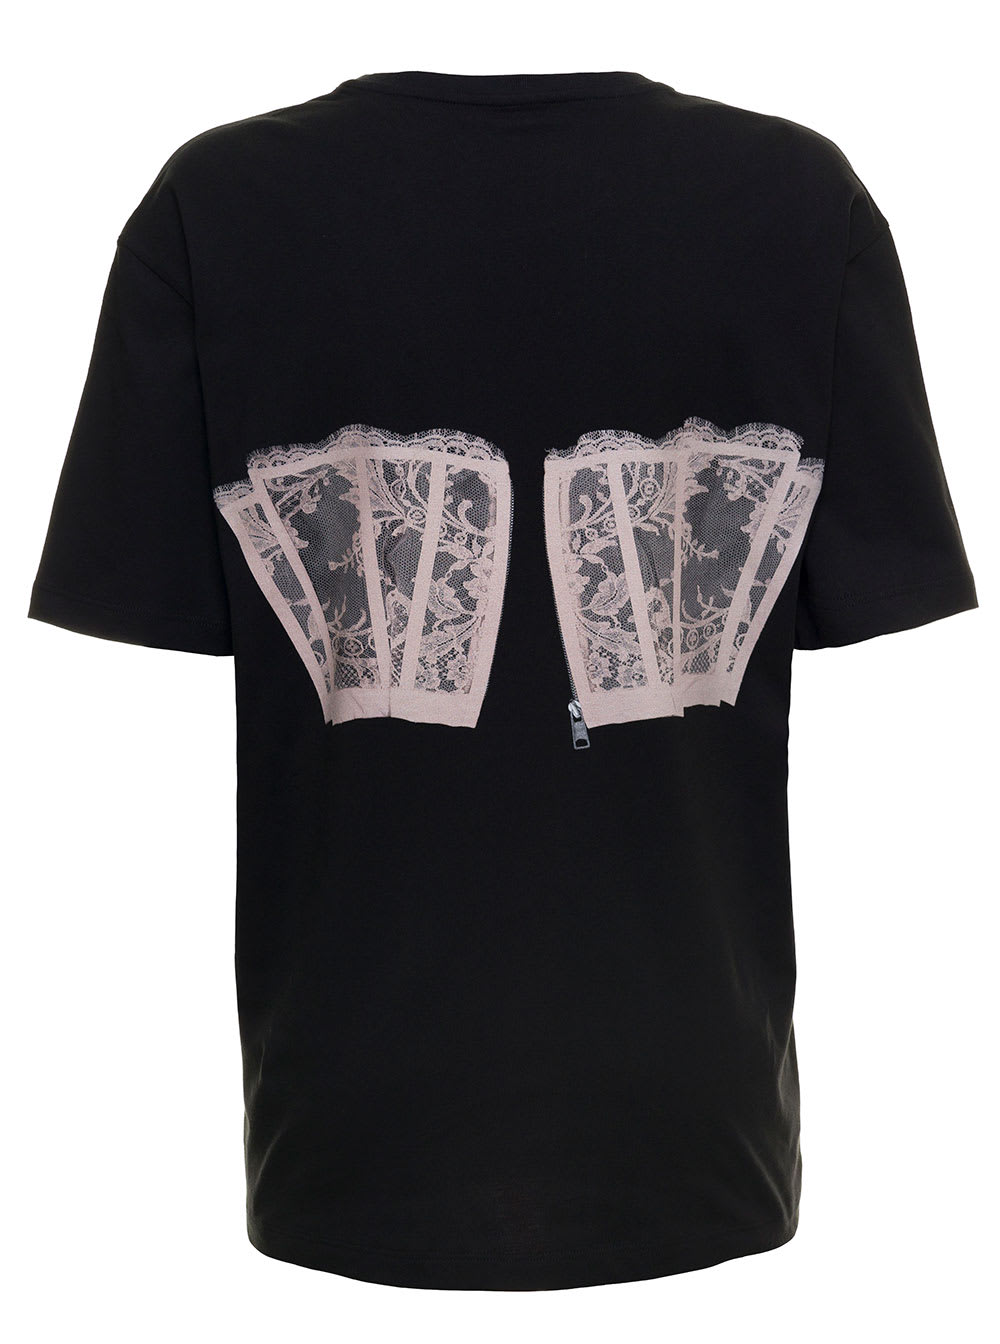 Shop Alexander Mcqueen Womans Black Cotton T-shirt With Corset Print